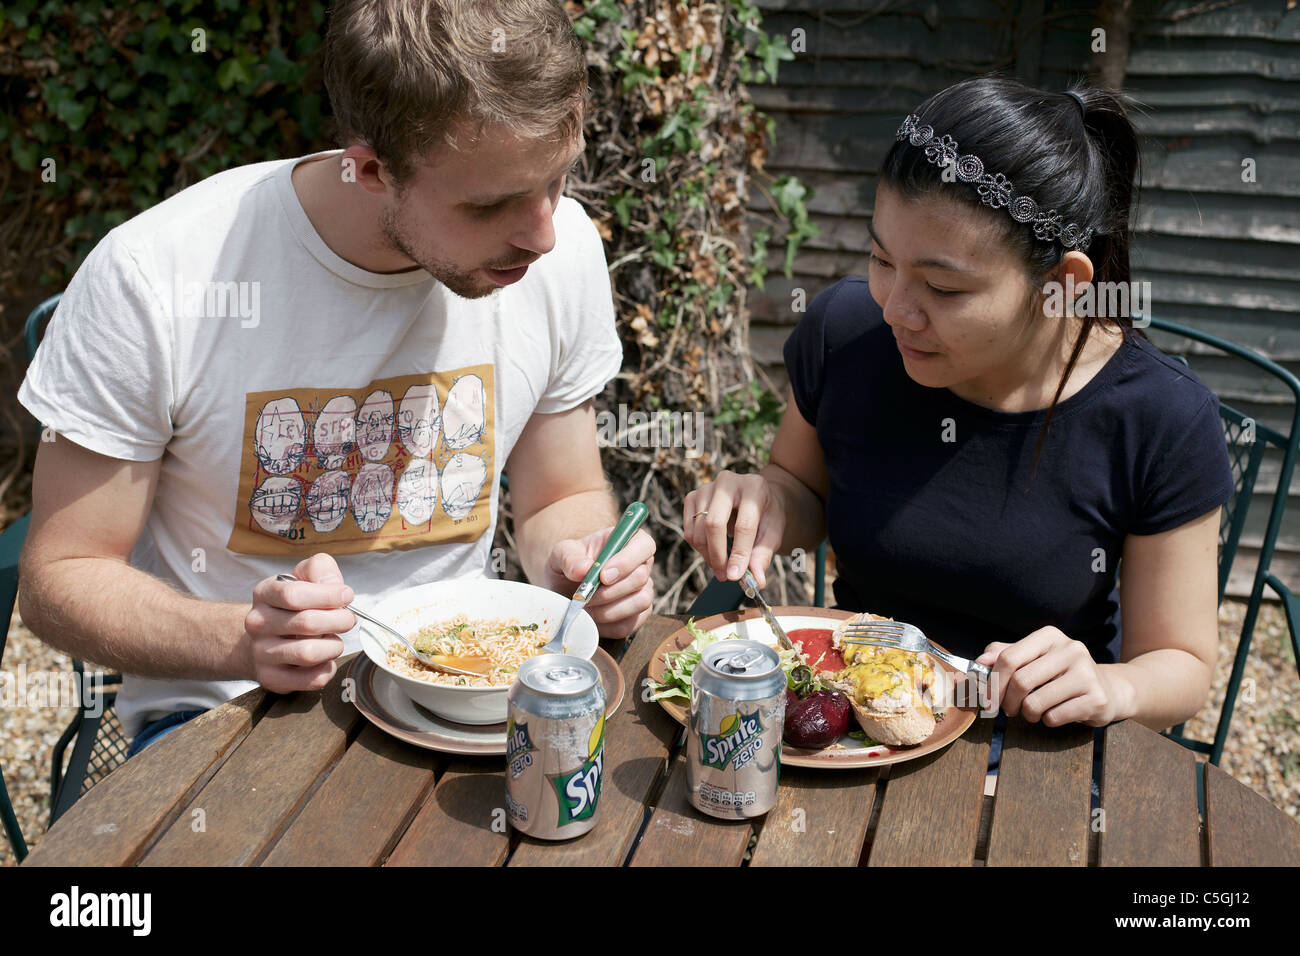 Garçon anglais de manger la nourriture thaïe et Thai girl eating French food England UK Banque D'Images